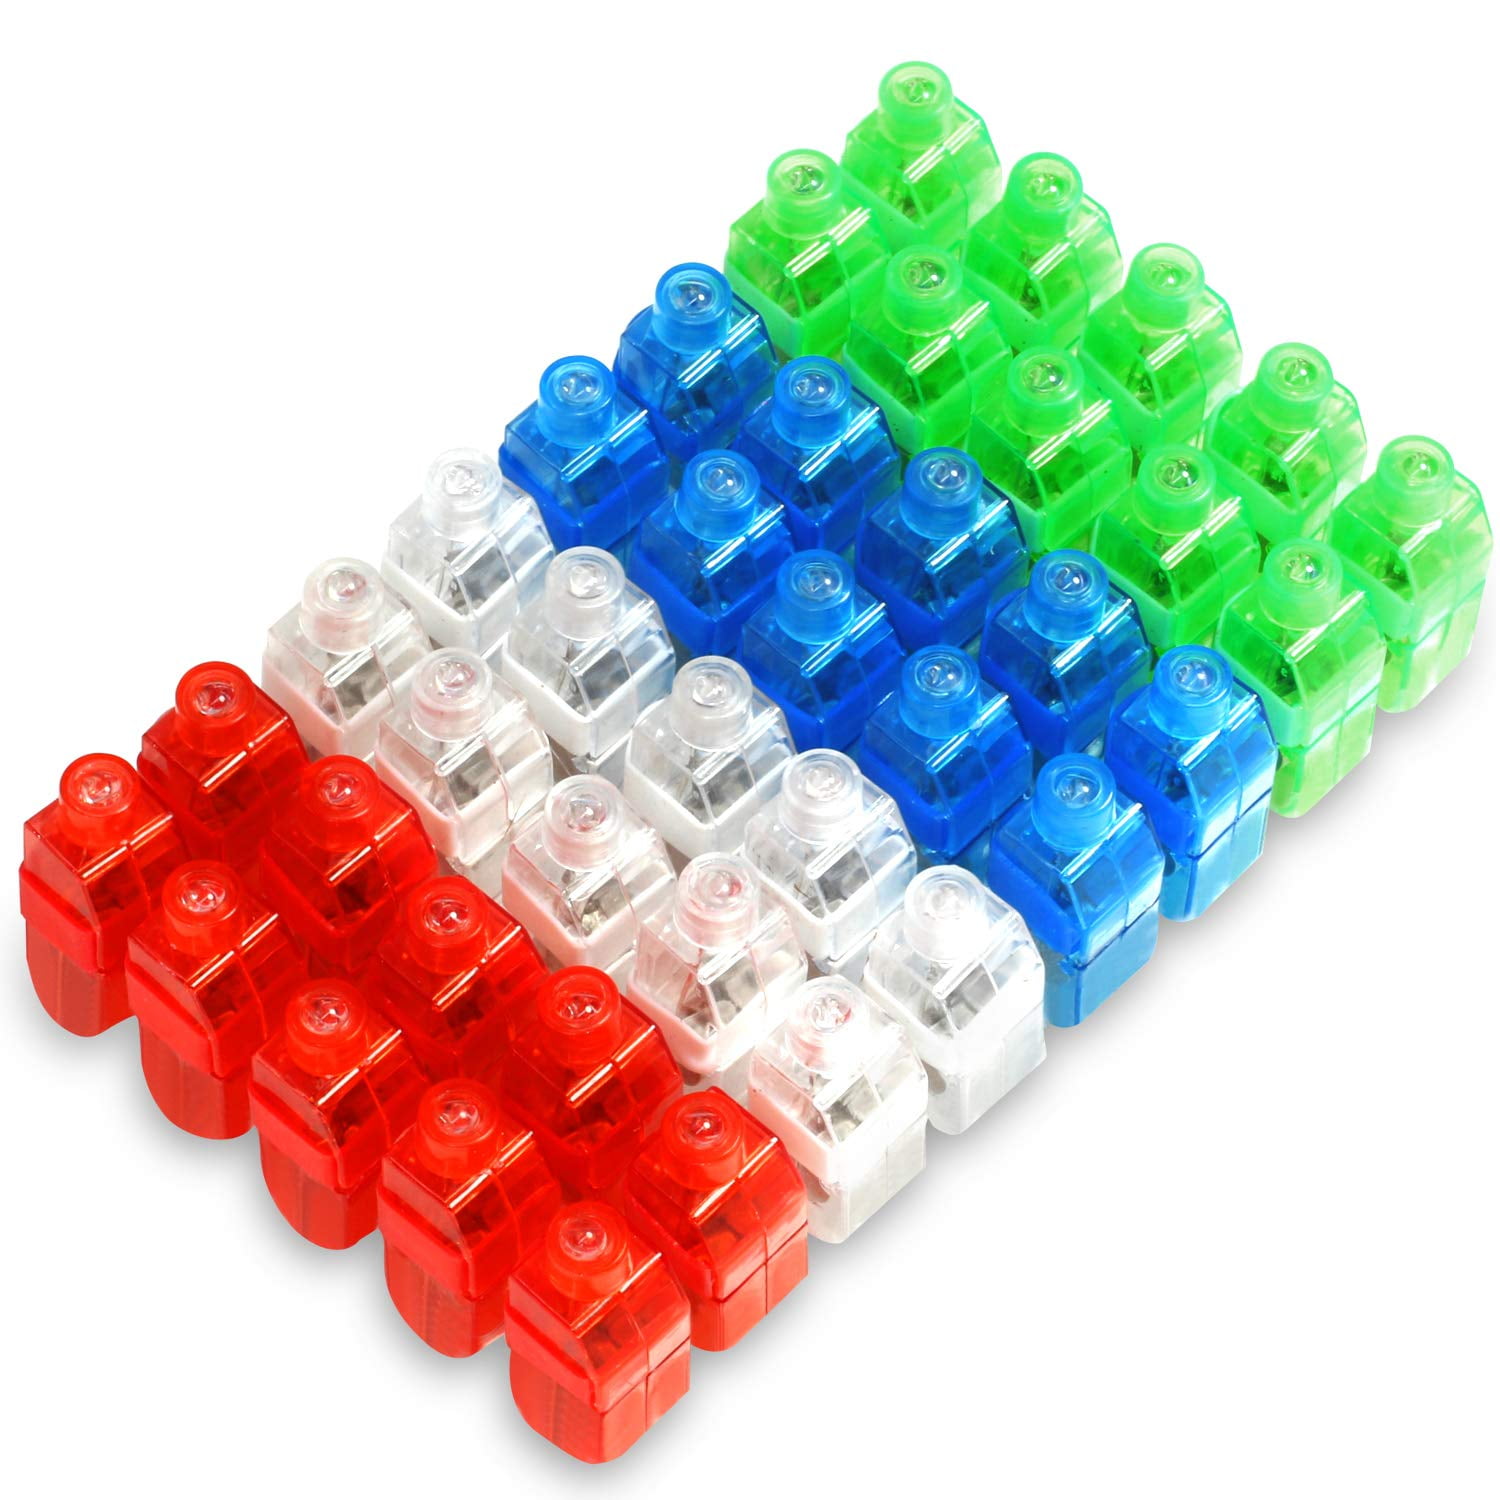 100PCS Colorful Finger Lights Light-UP Toy Led Finger Light Ring